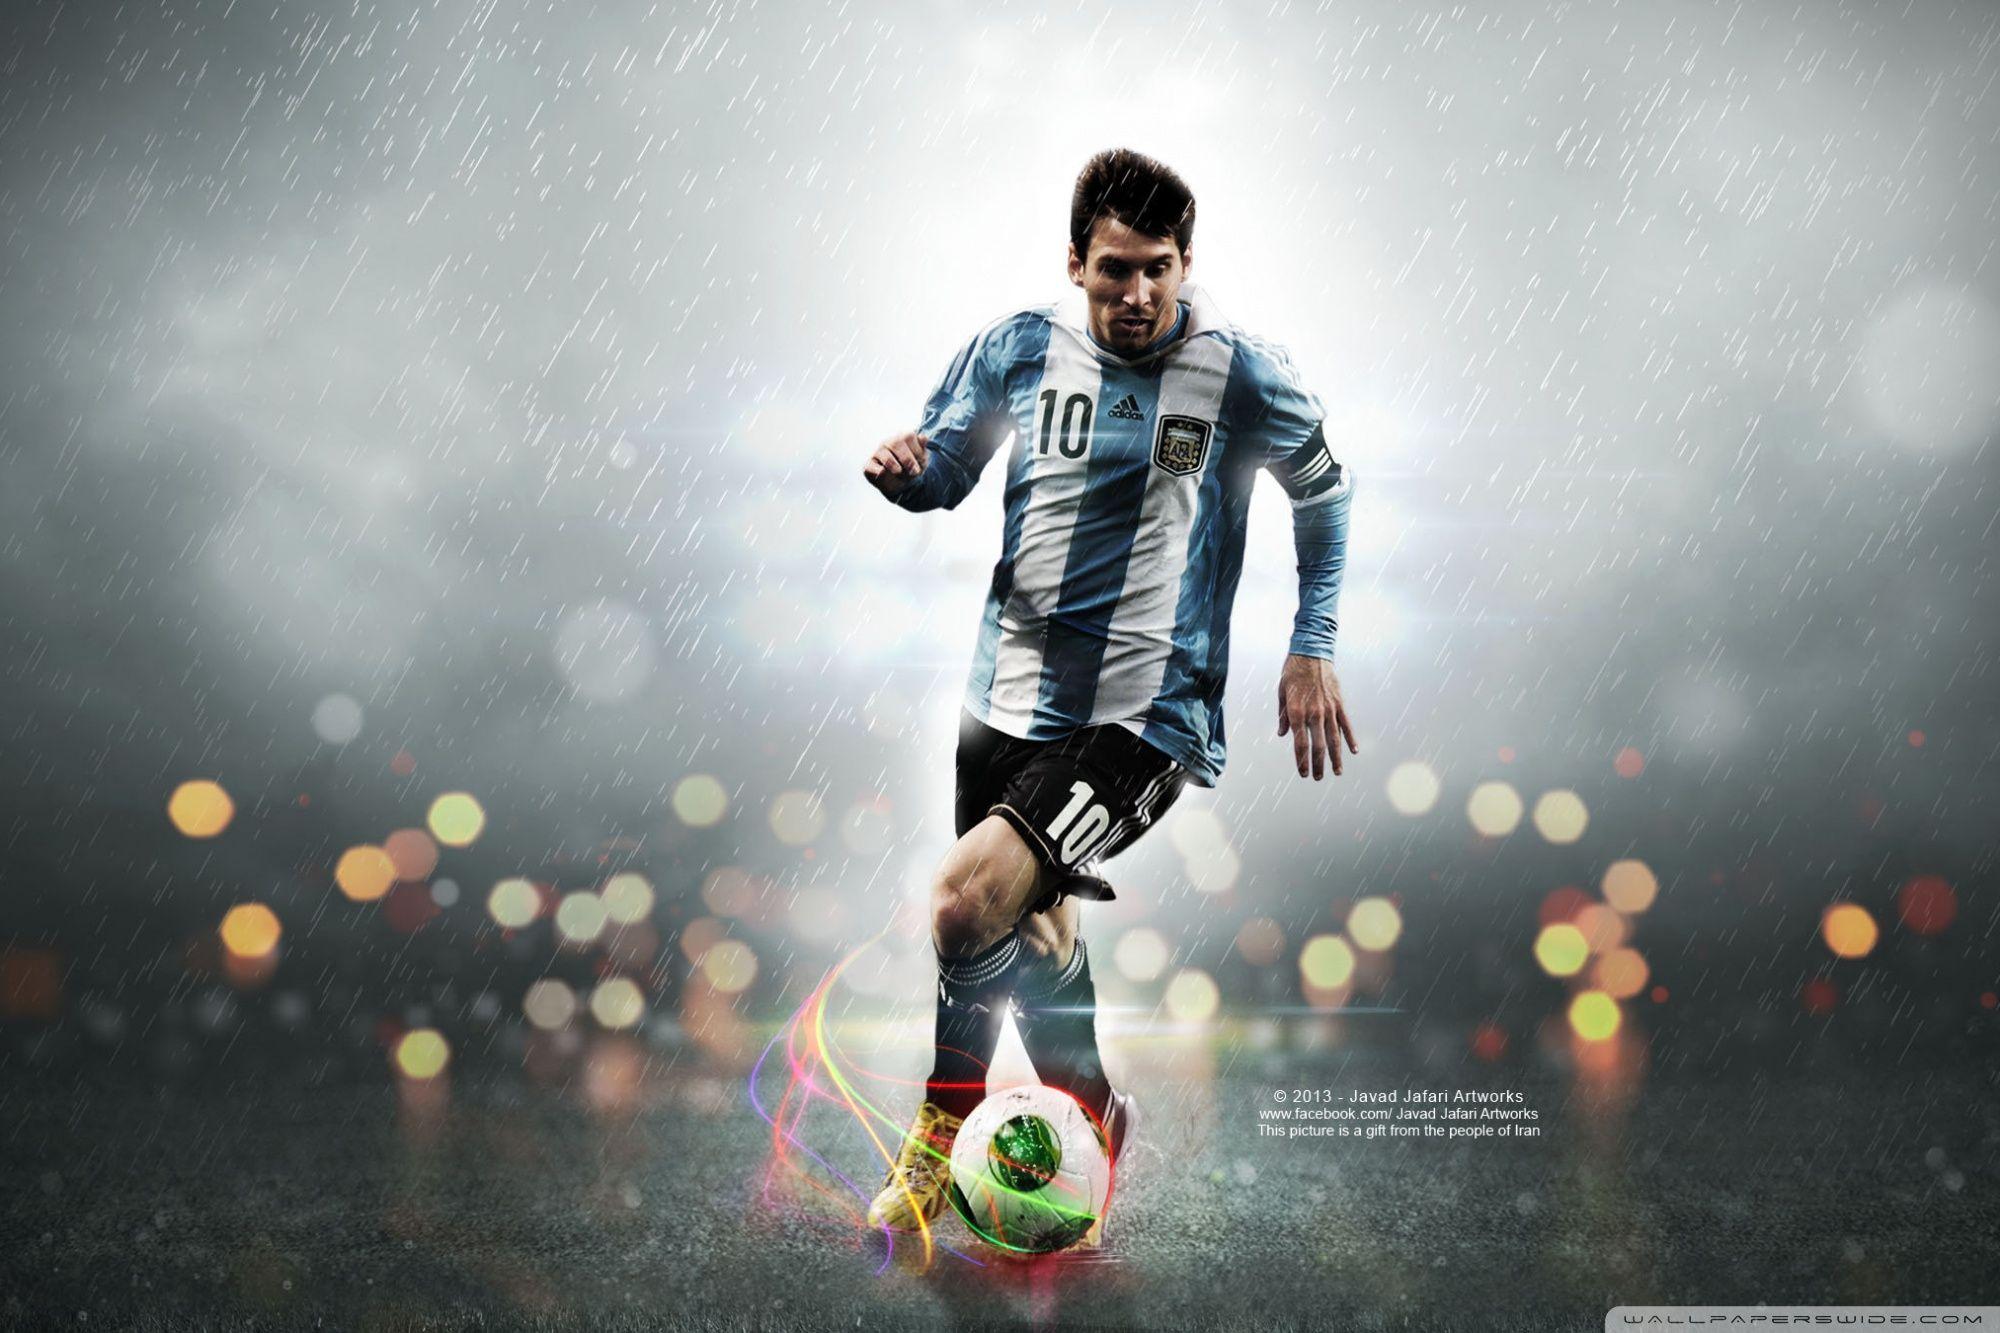 Hãy ngắm nhìn bức hình nền của Messi với chất lượng HD tuyệt đẹp. Sự pha trộn giữa màu sắc và nét bút rất tinh tế sẽ khiến cho người hâm mộ Messi phải trầm trồ. Hãy cập nhật thường xuyên hình nền cho điện thoại của bạn để cảm nhận sự vẻ đẹp vô tận của siêu sao bóng đá Argentina này.